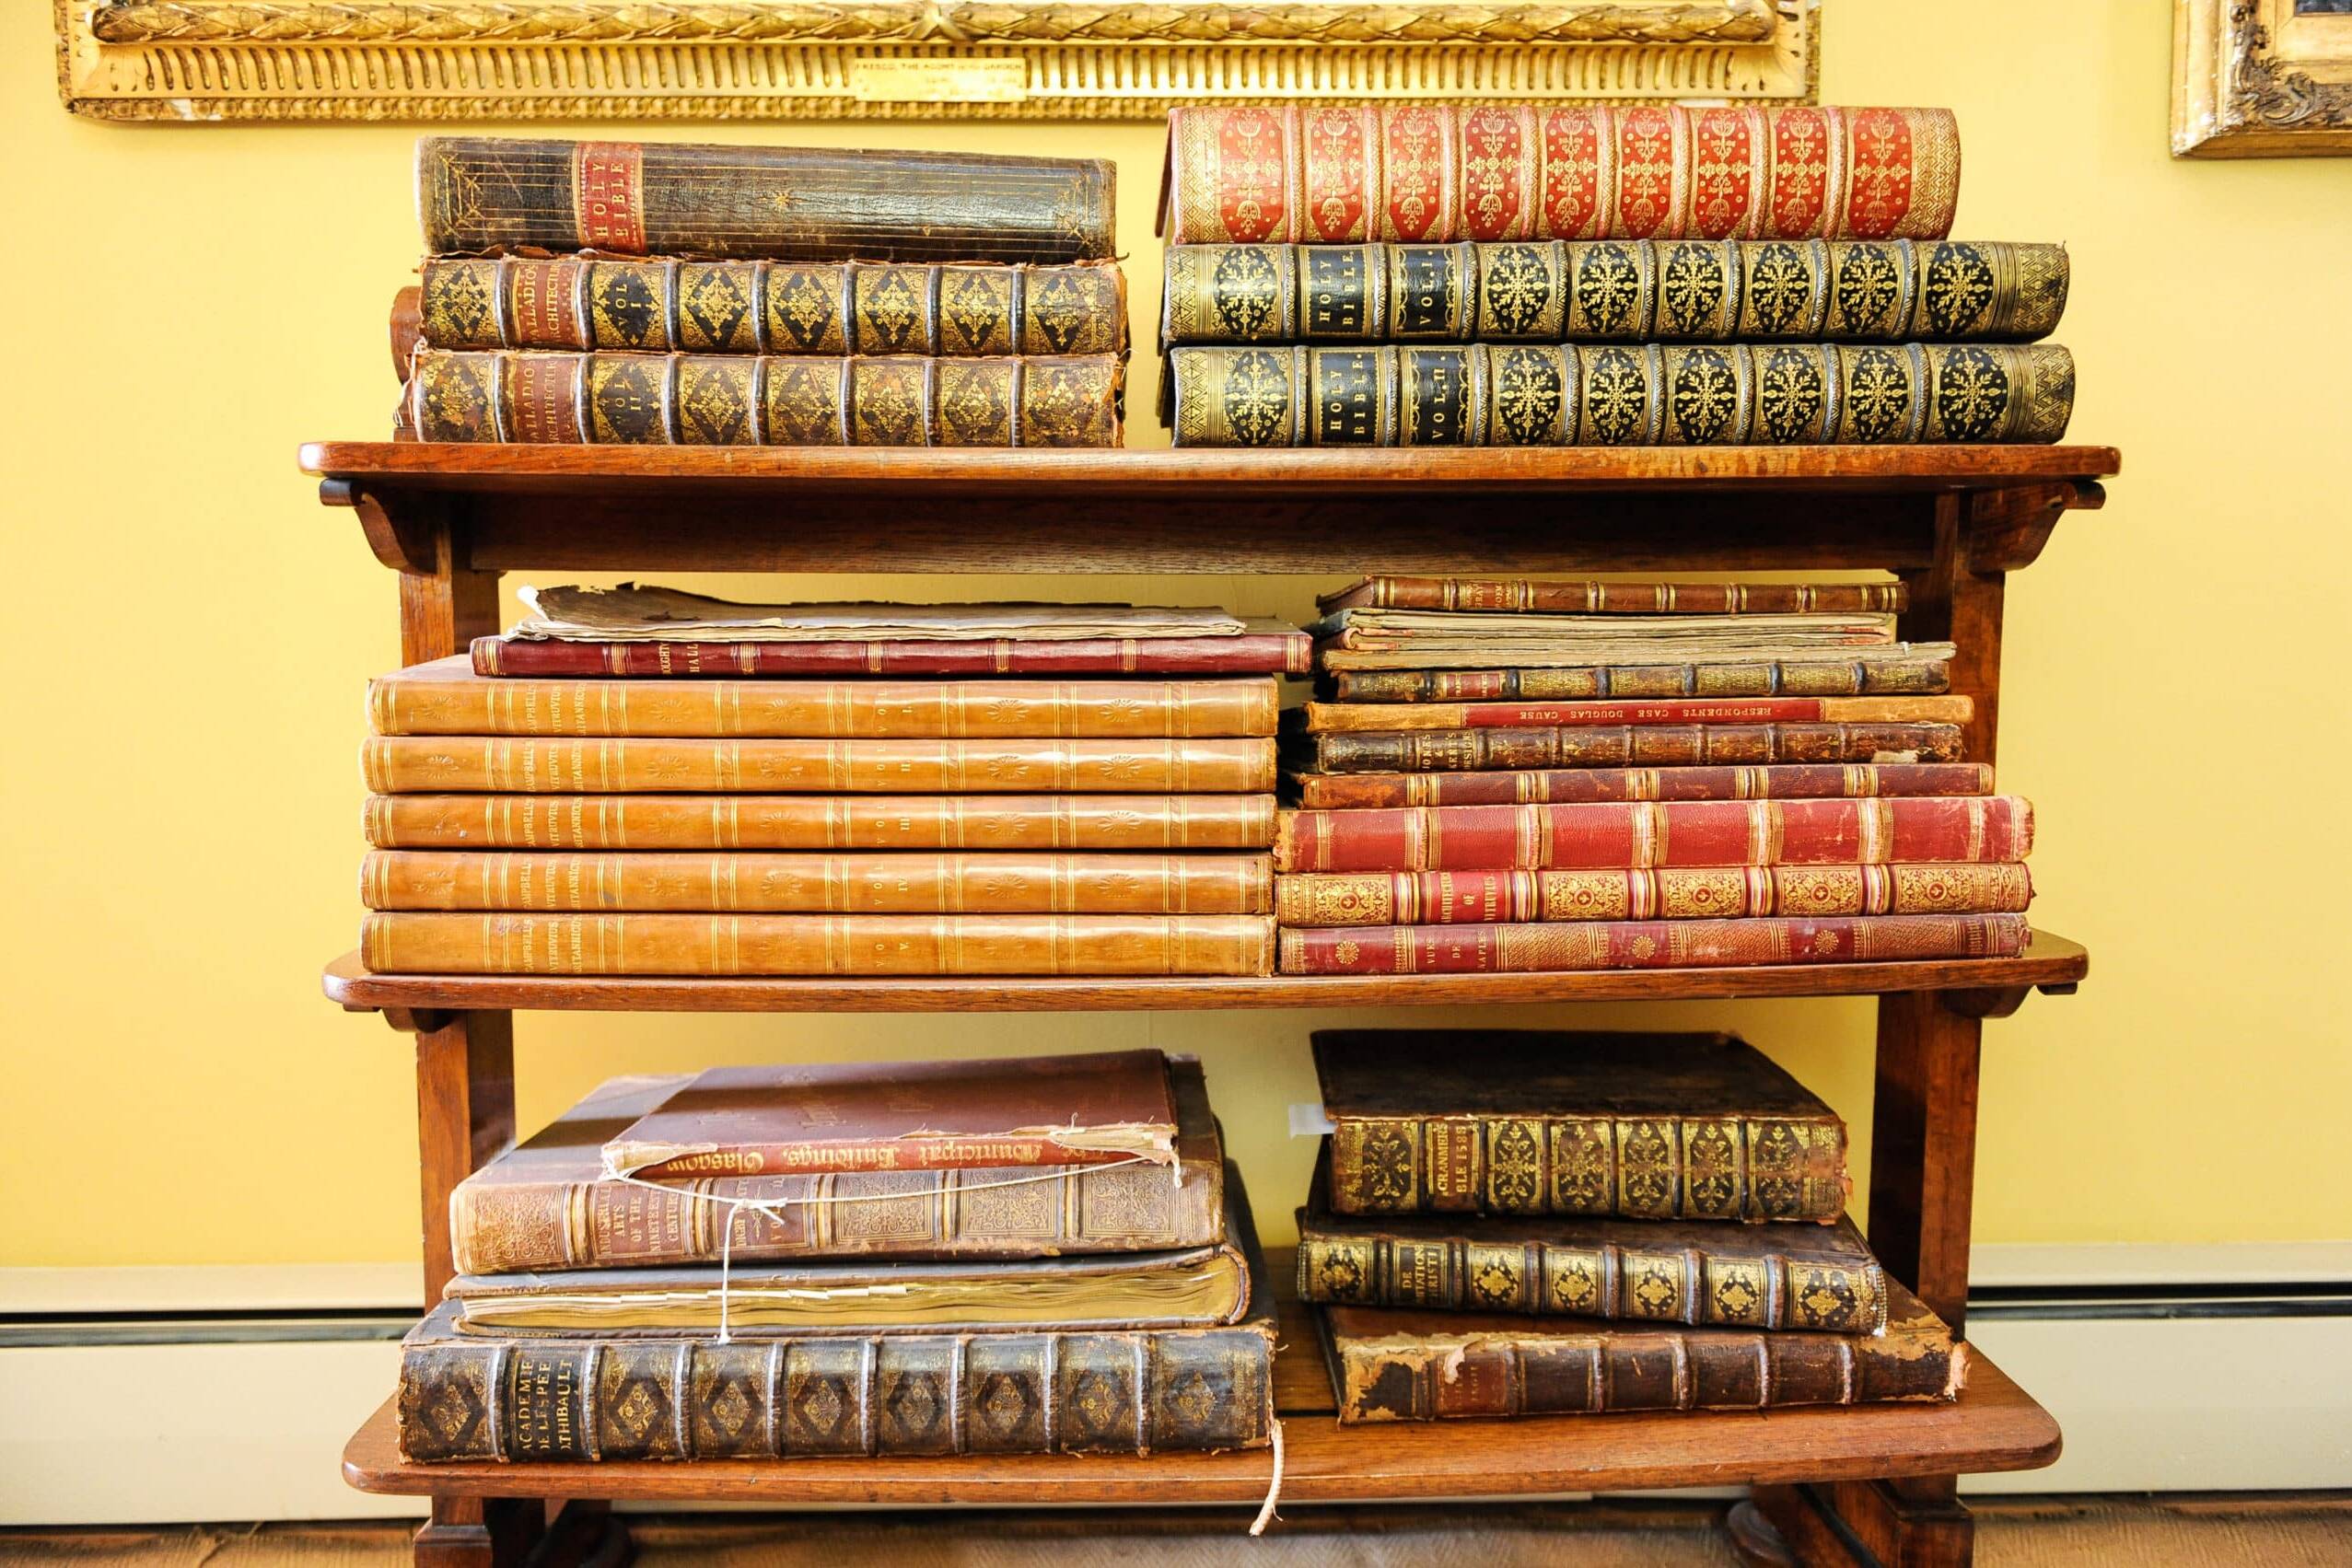 Antique books on shelves